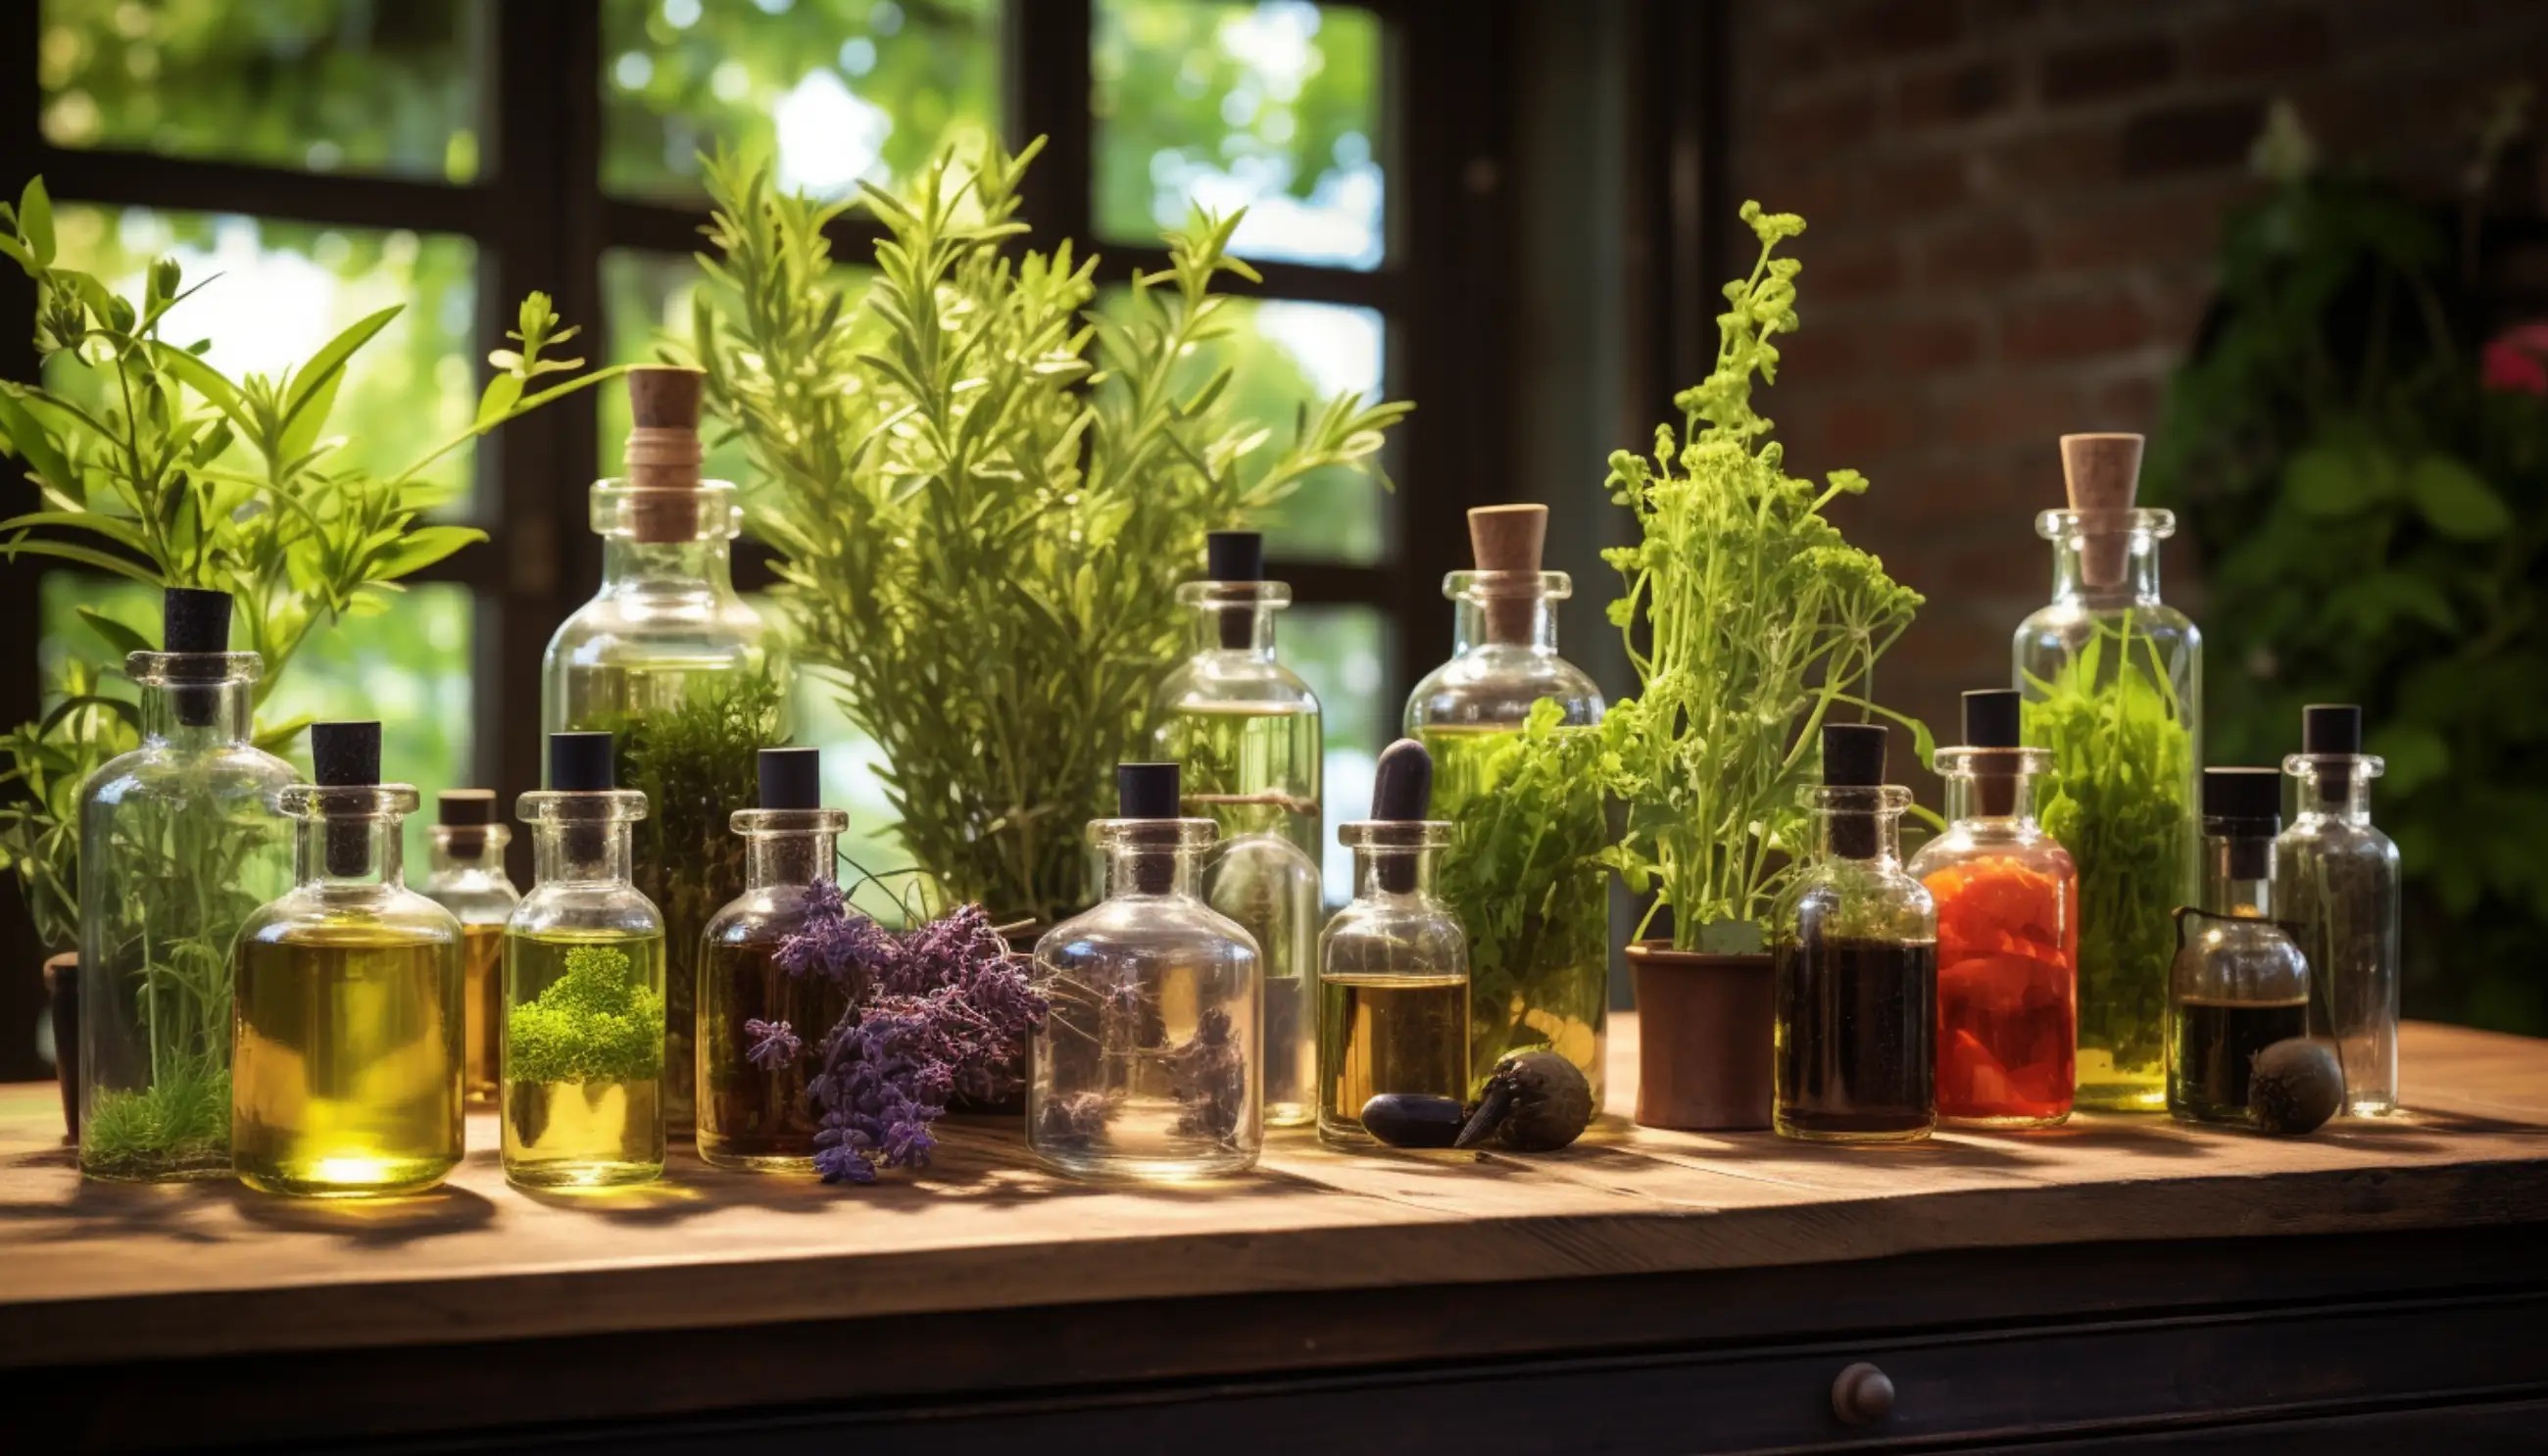 bouteilles remplies de différents types d'herbes sur une table